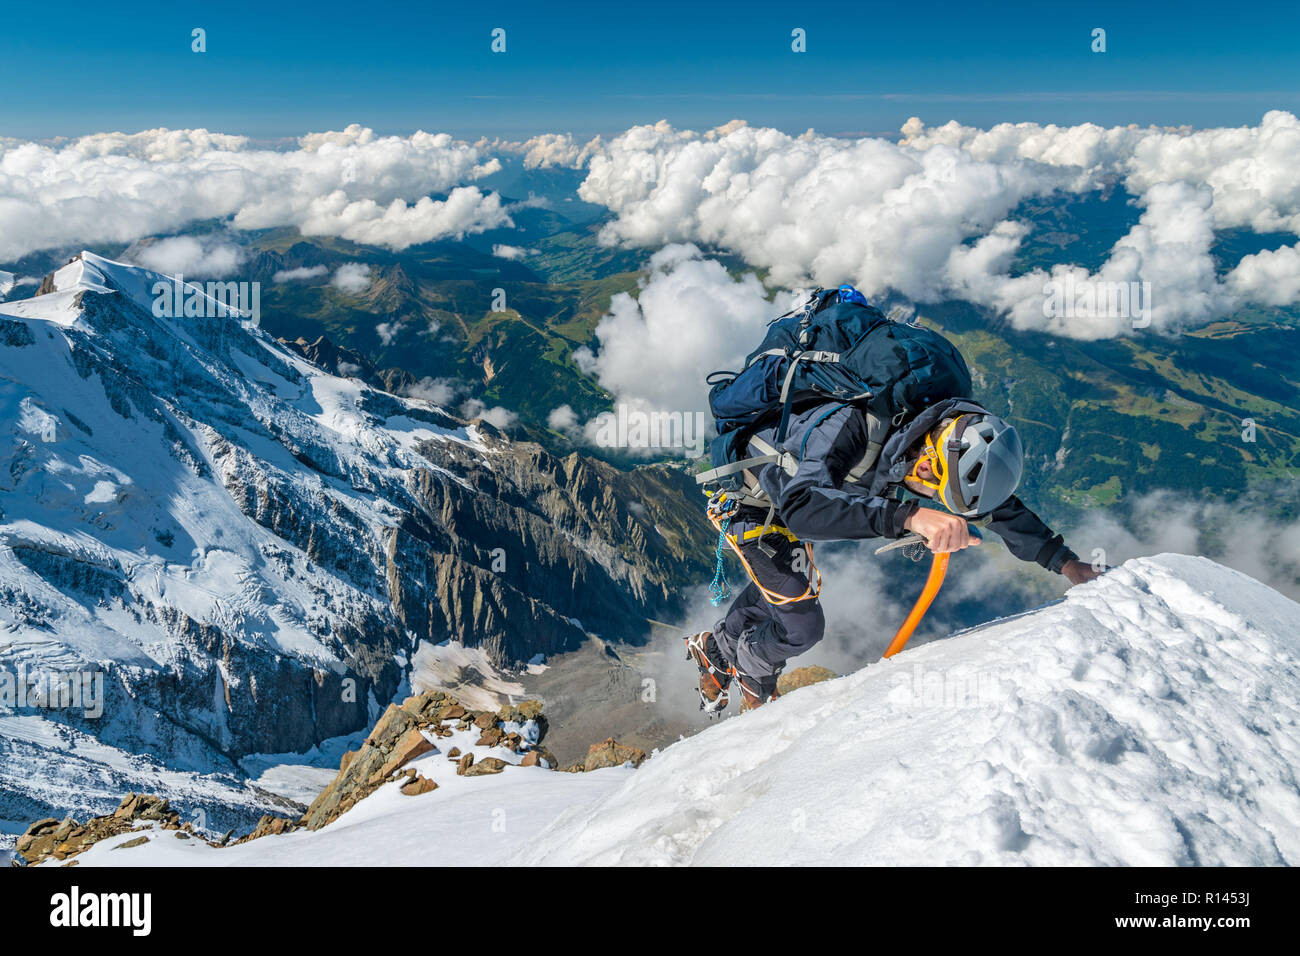 L'alpiniste extrême en haute altitude sur l'Aiguille de Bionnassay, sommet de montagne massif du Mont-Blanc, Alpes, France Banque D'Images